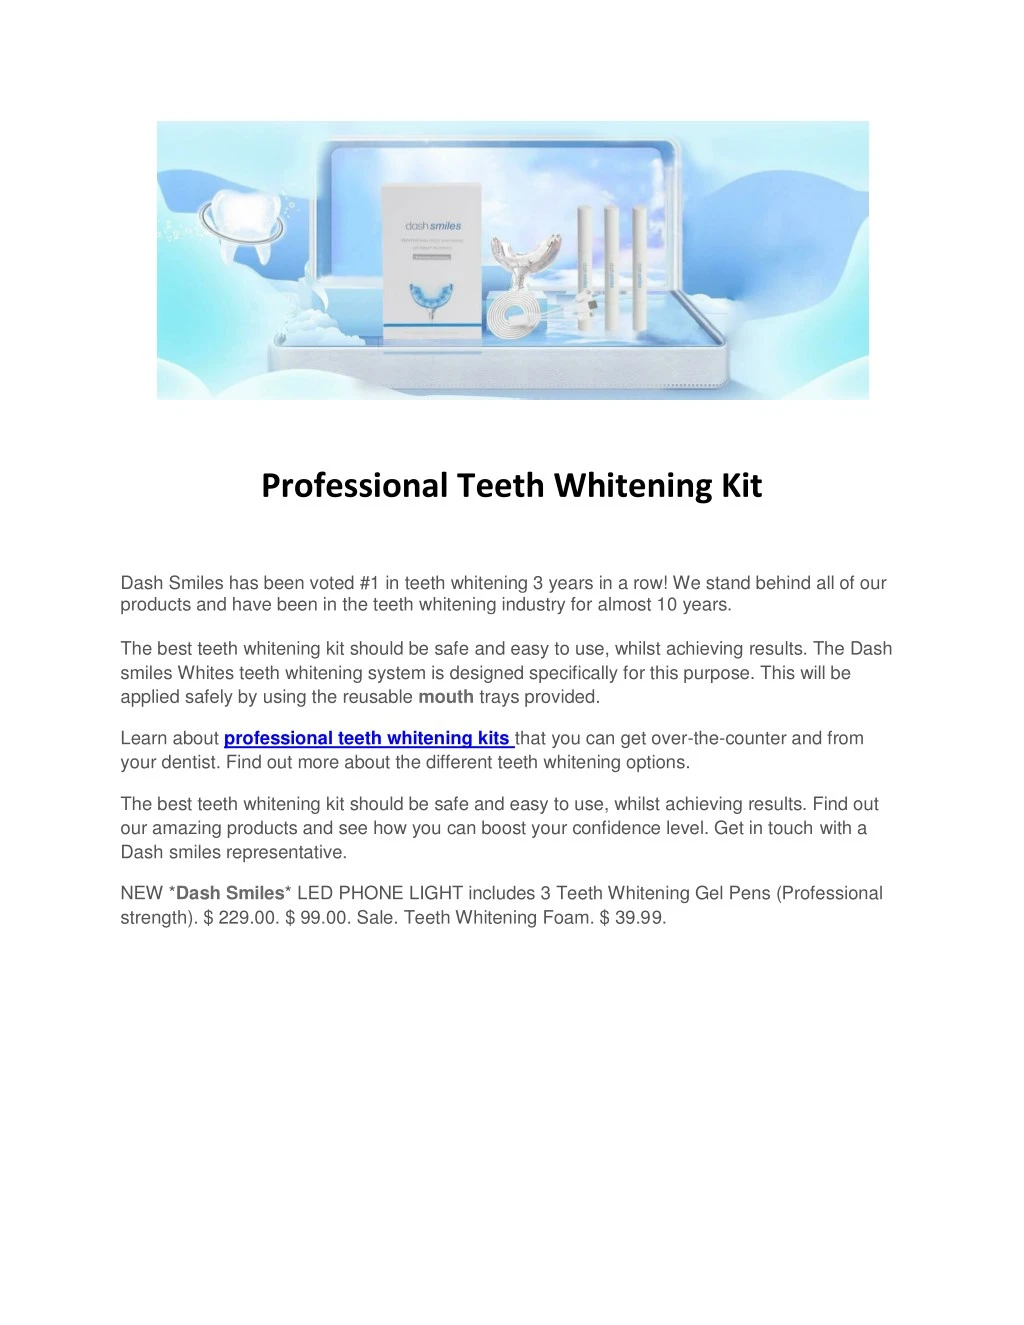 professional teeth whitening kit dash smiles